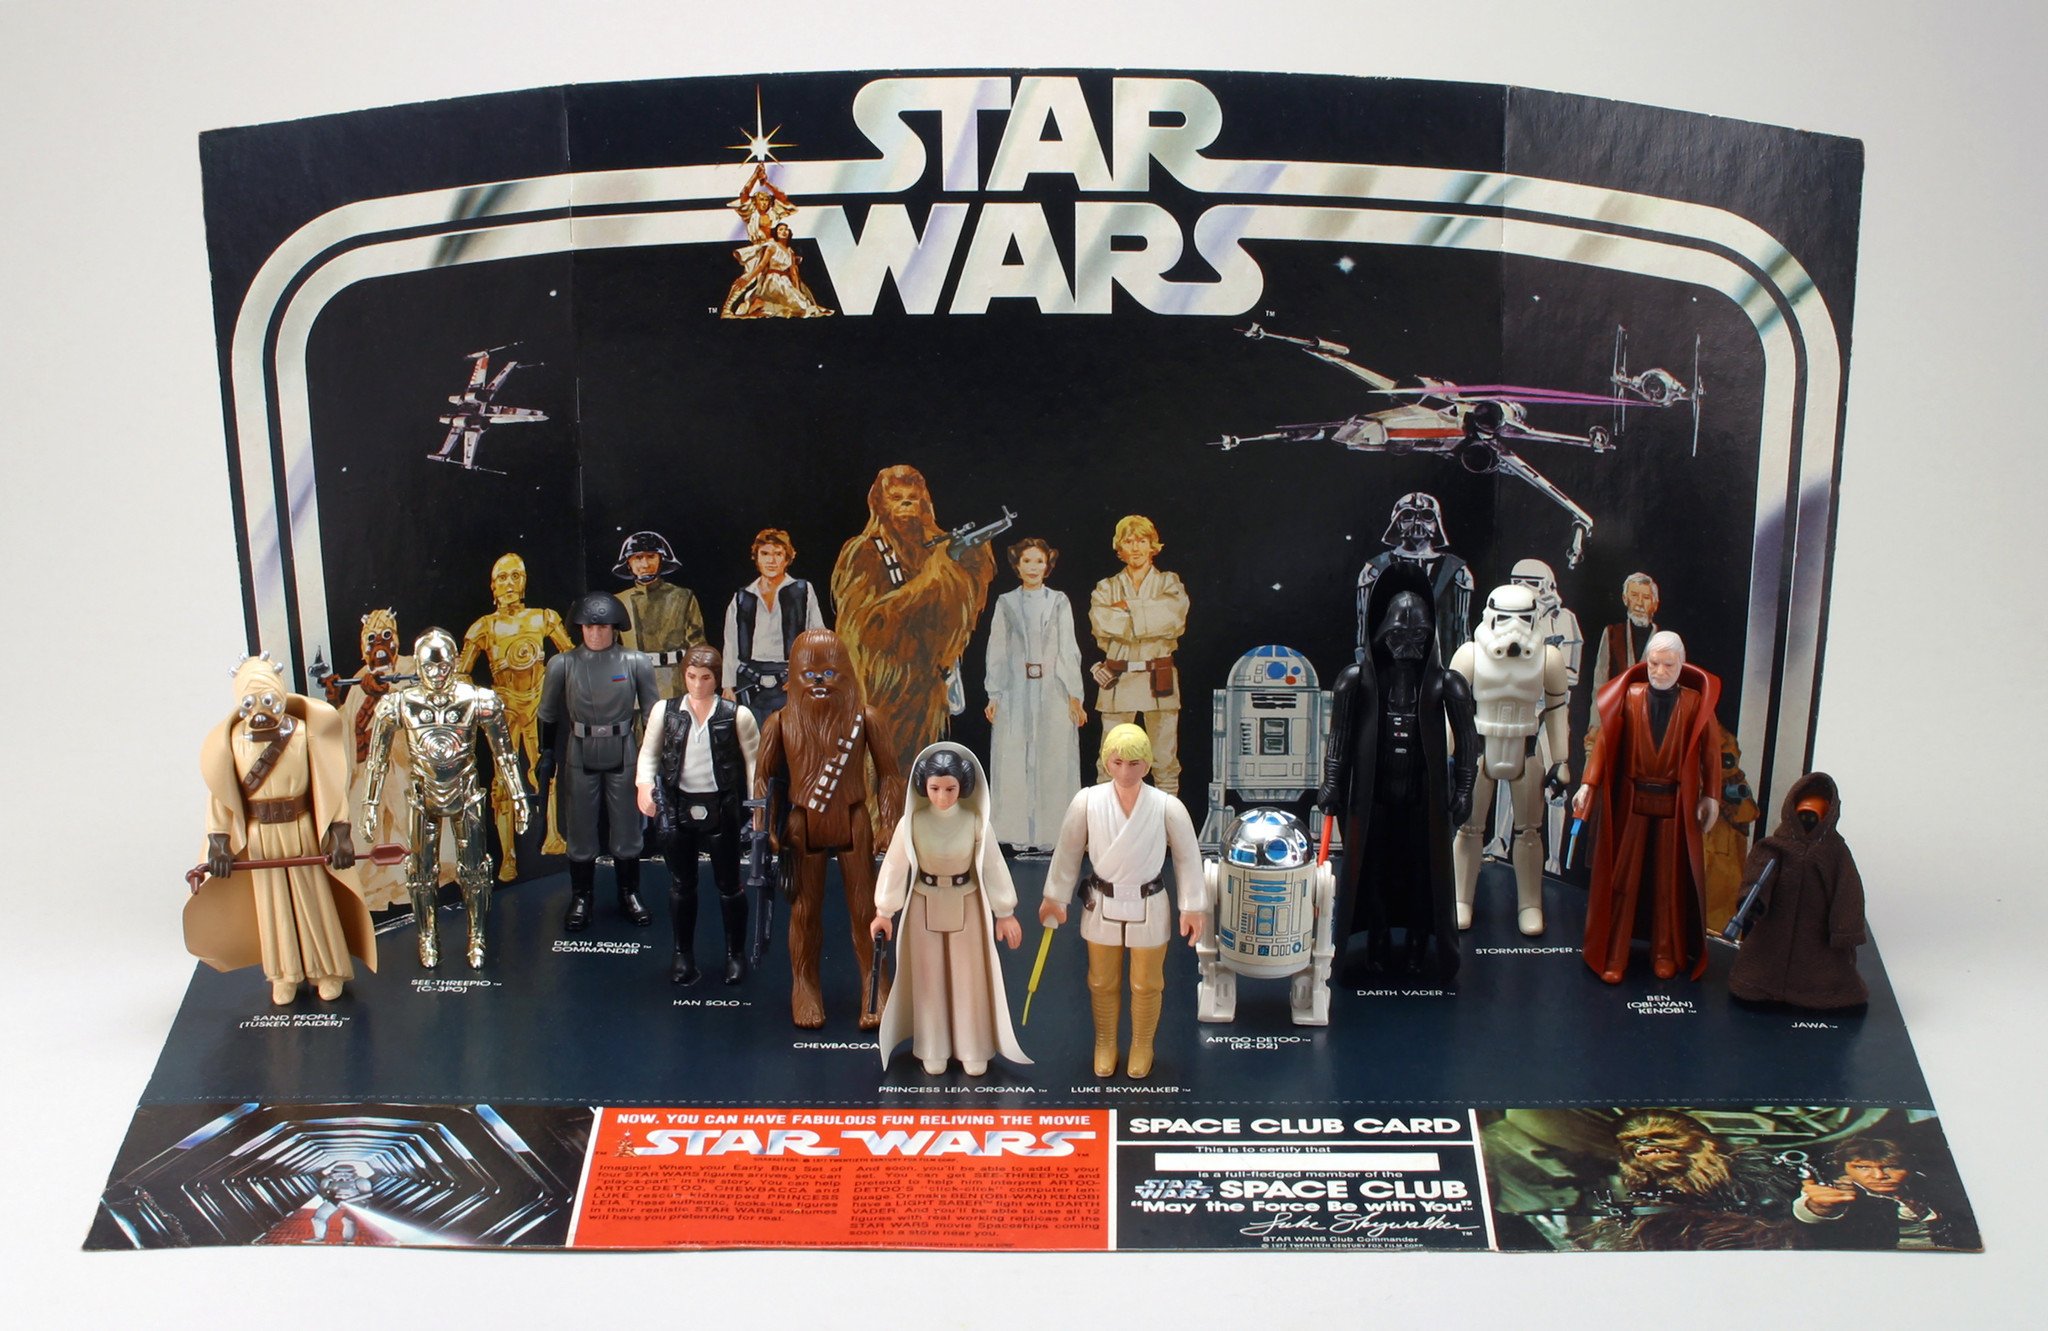 Star Wars 1977 Merchandise